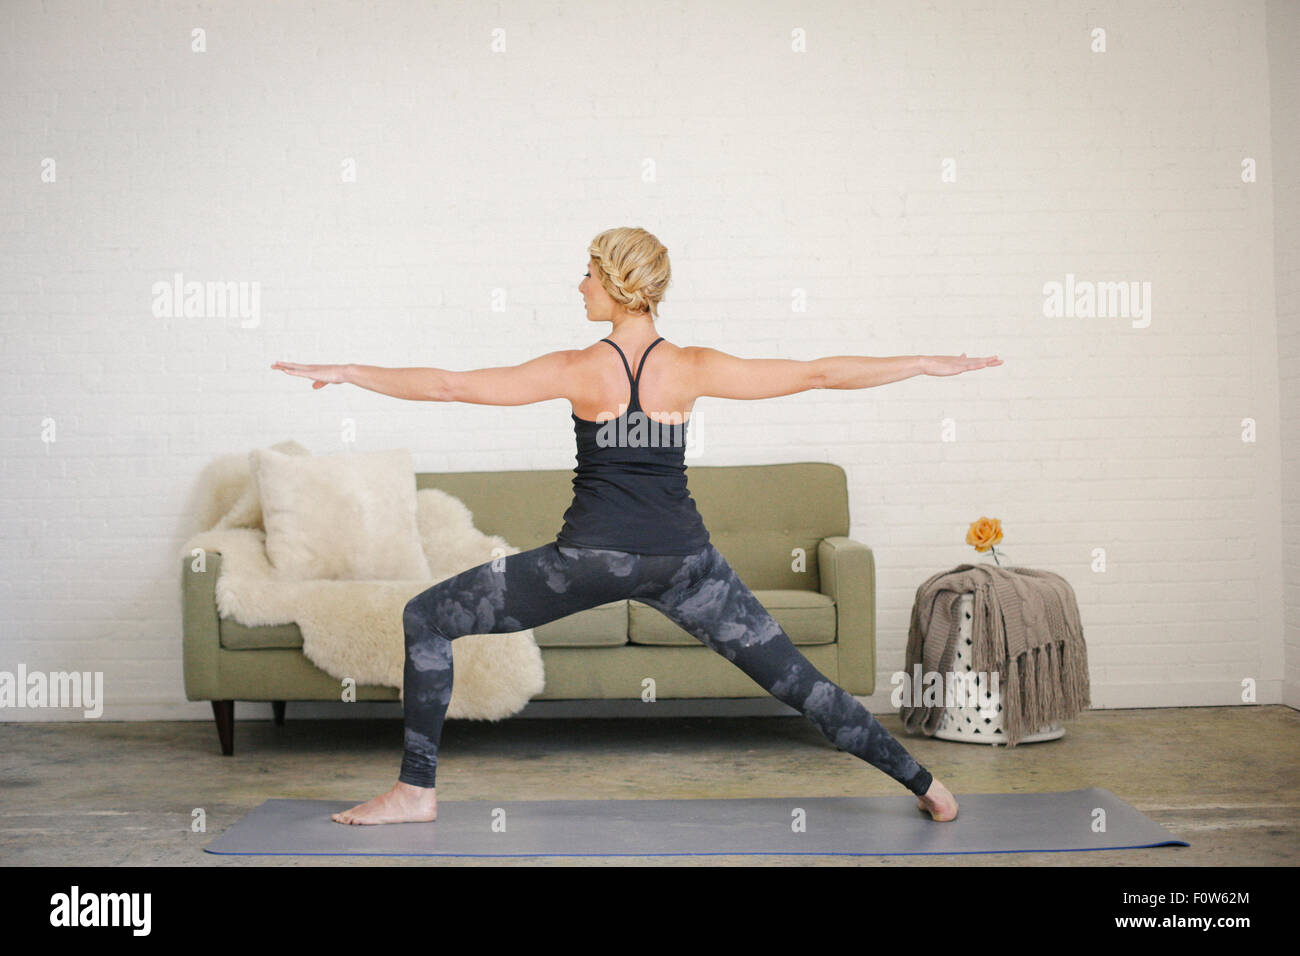 Una donna bionda in un nero leotard e gambali in piedi su un materassino yoga in una stanza, la sua gambe divaricate e braccia tese. Foto Stock